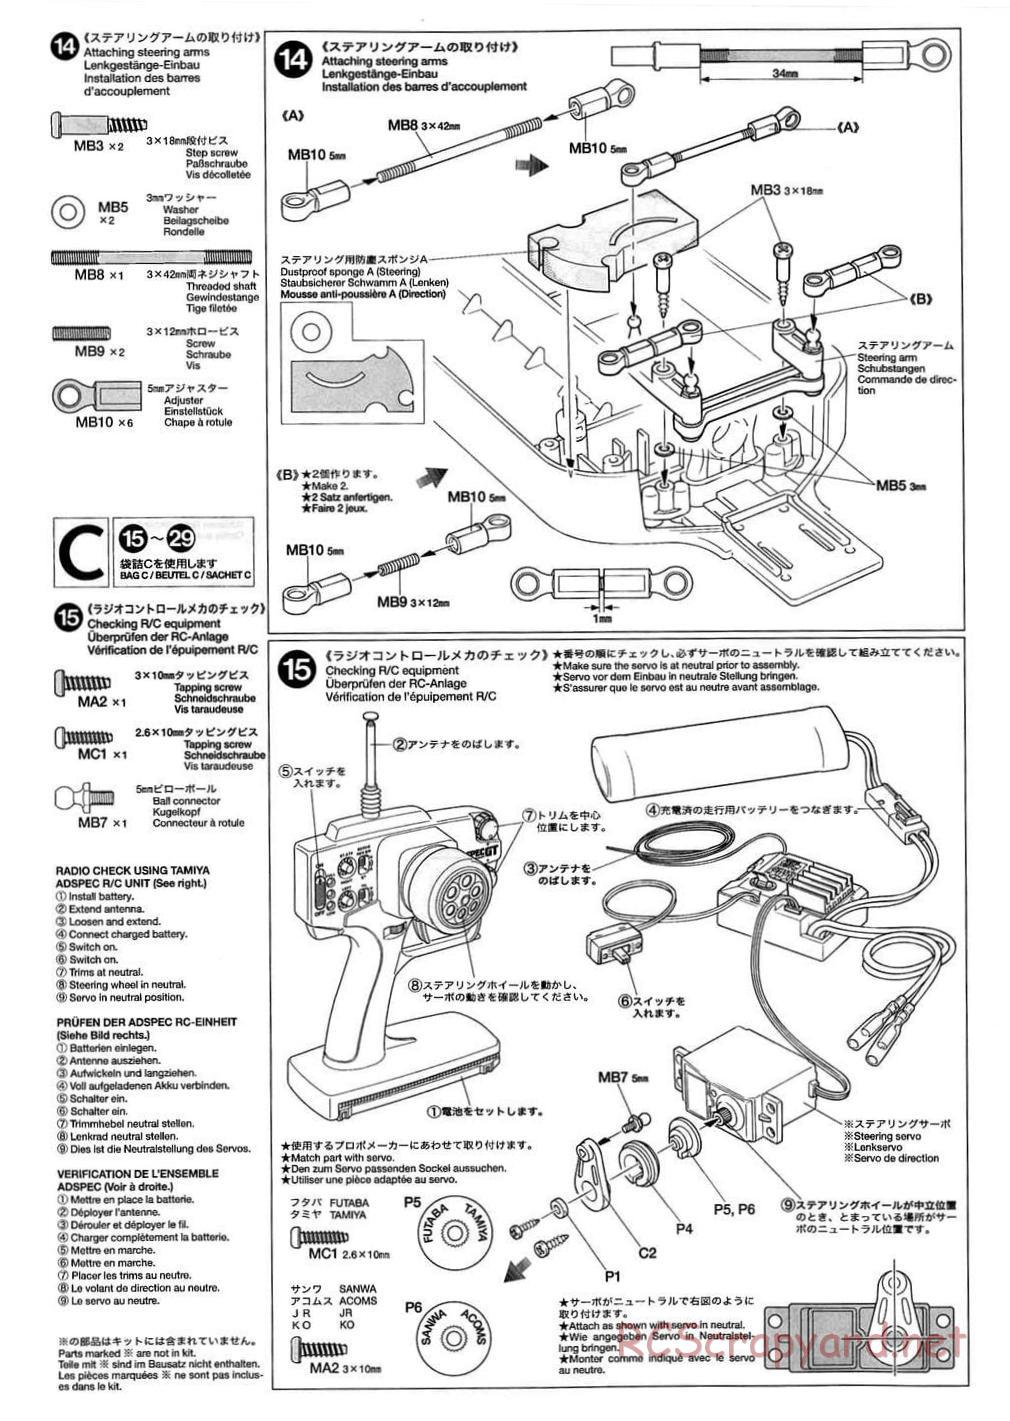 Tamiya - TB-01 Chassis - Manual - Page 8